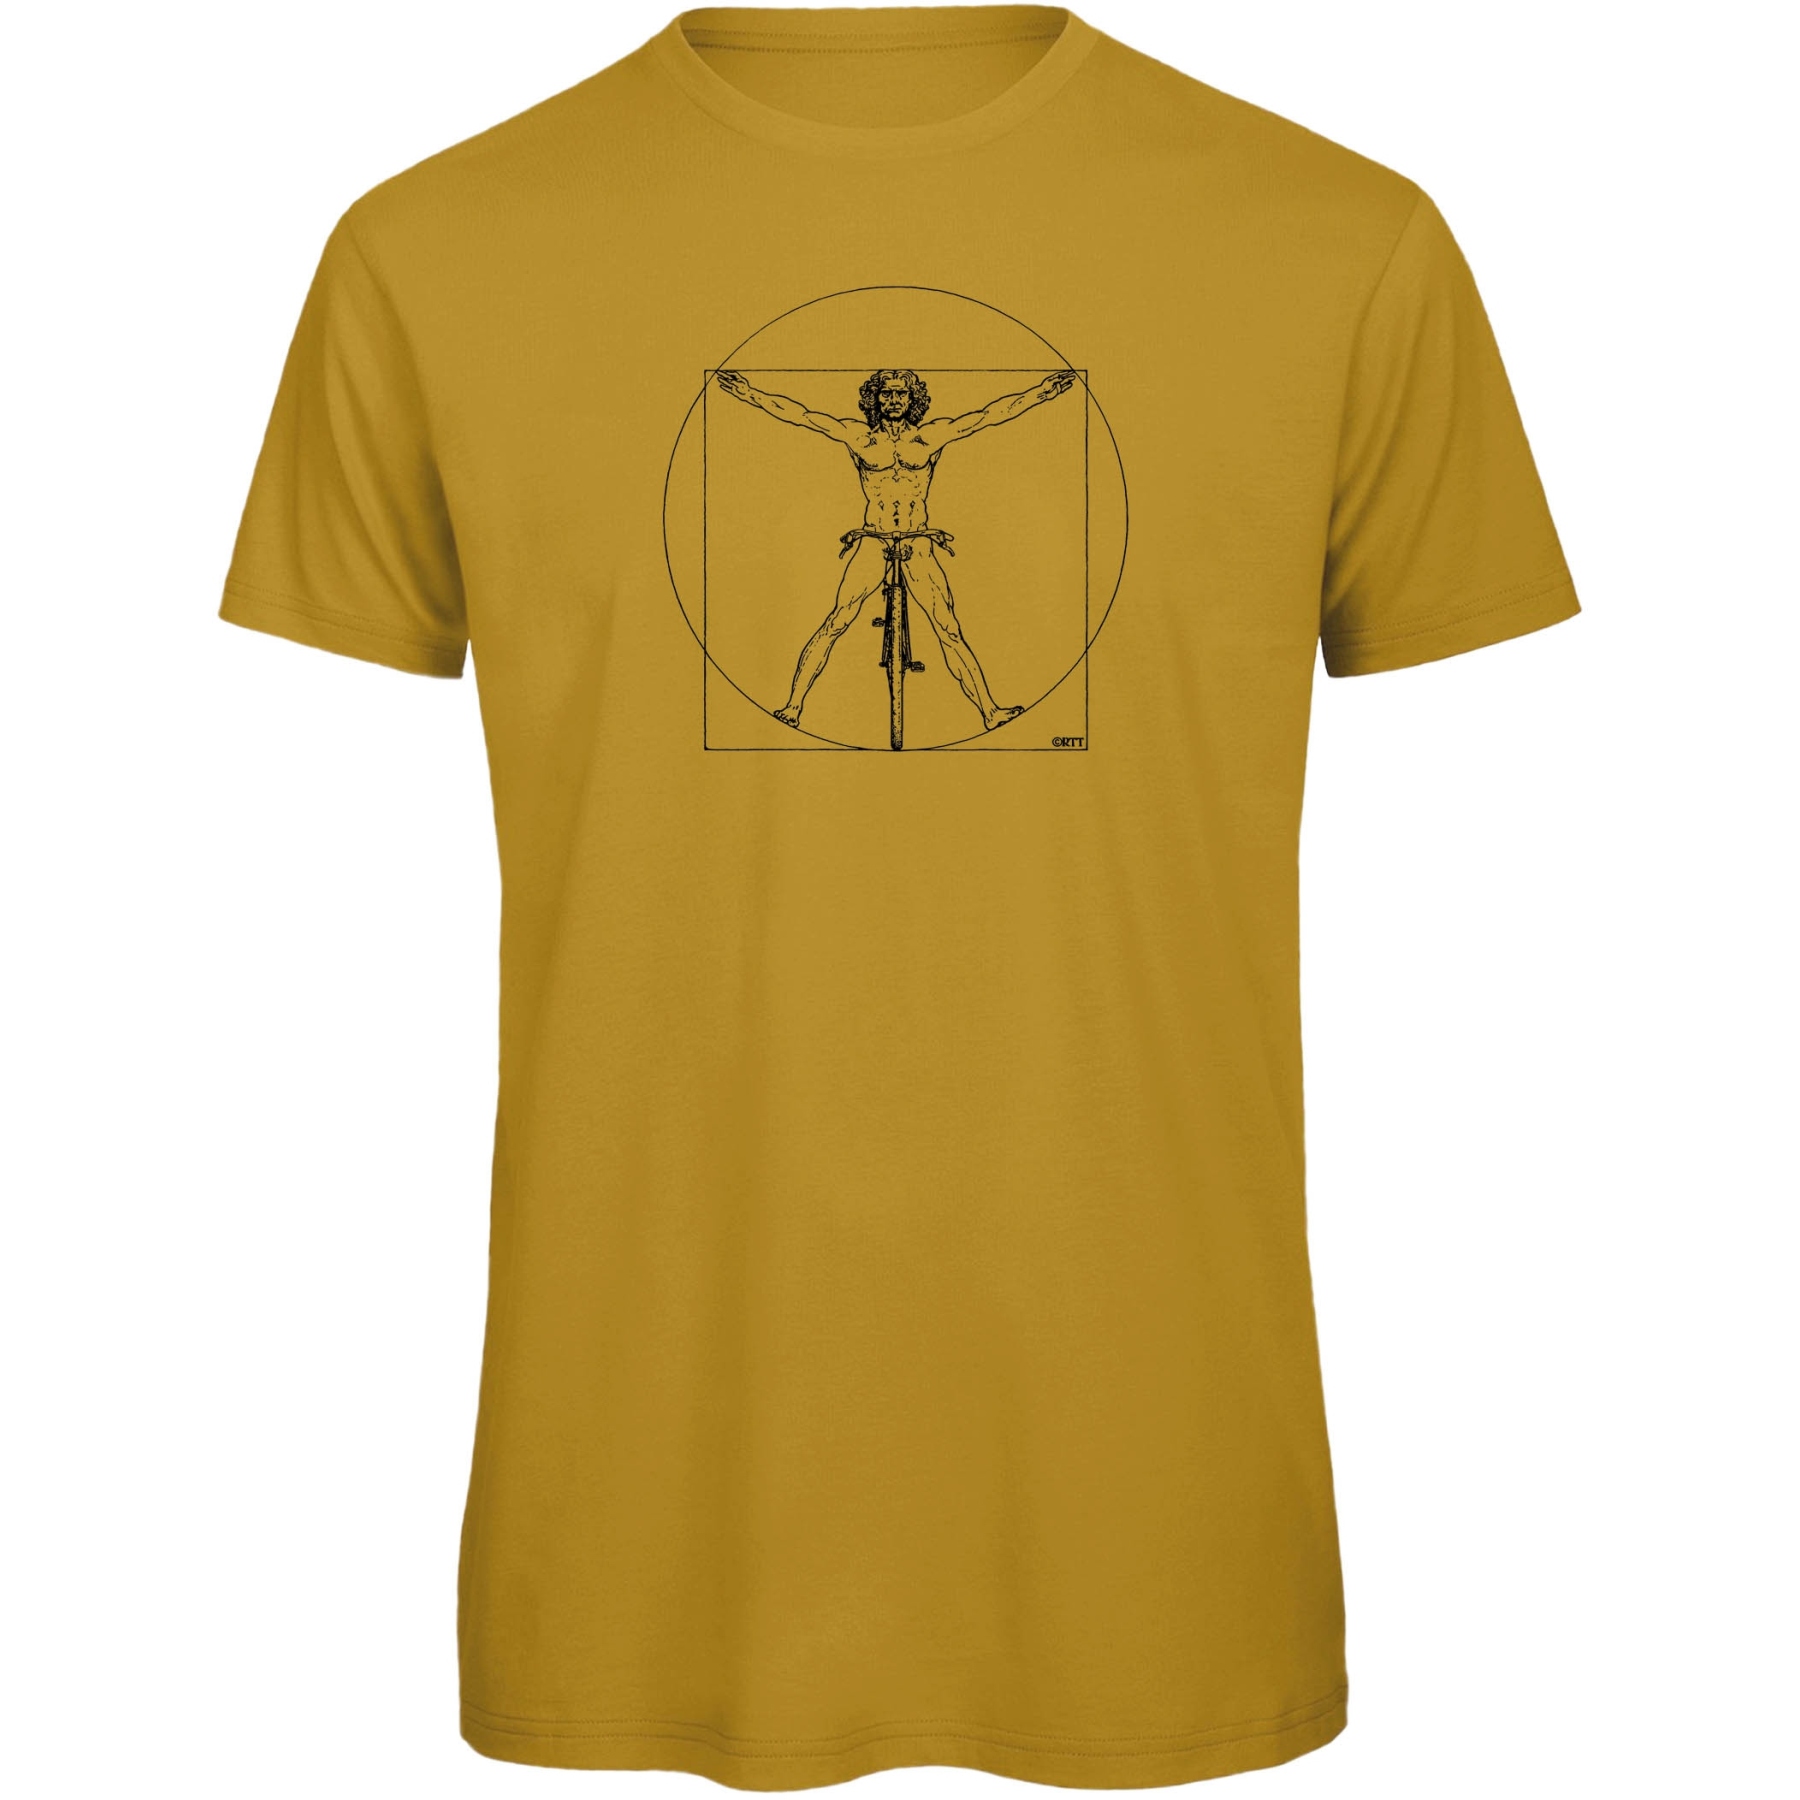 Produktbild von RTTshirts Fahrrad T-Shirt DaVinci - ocker